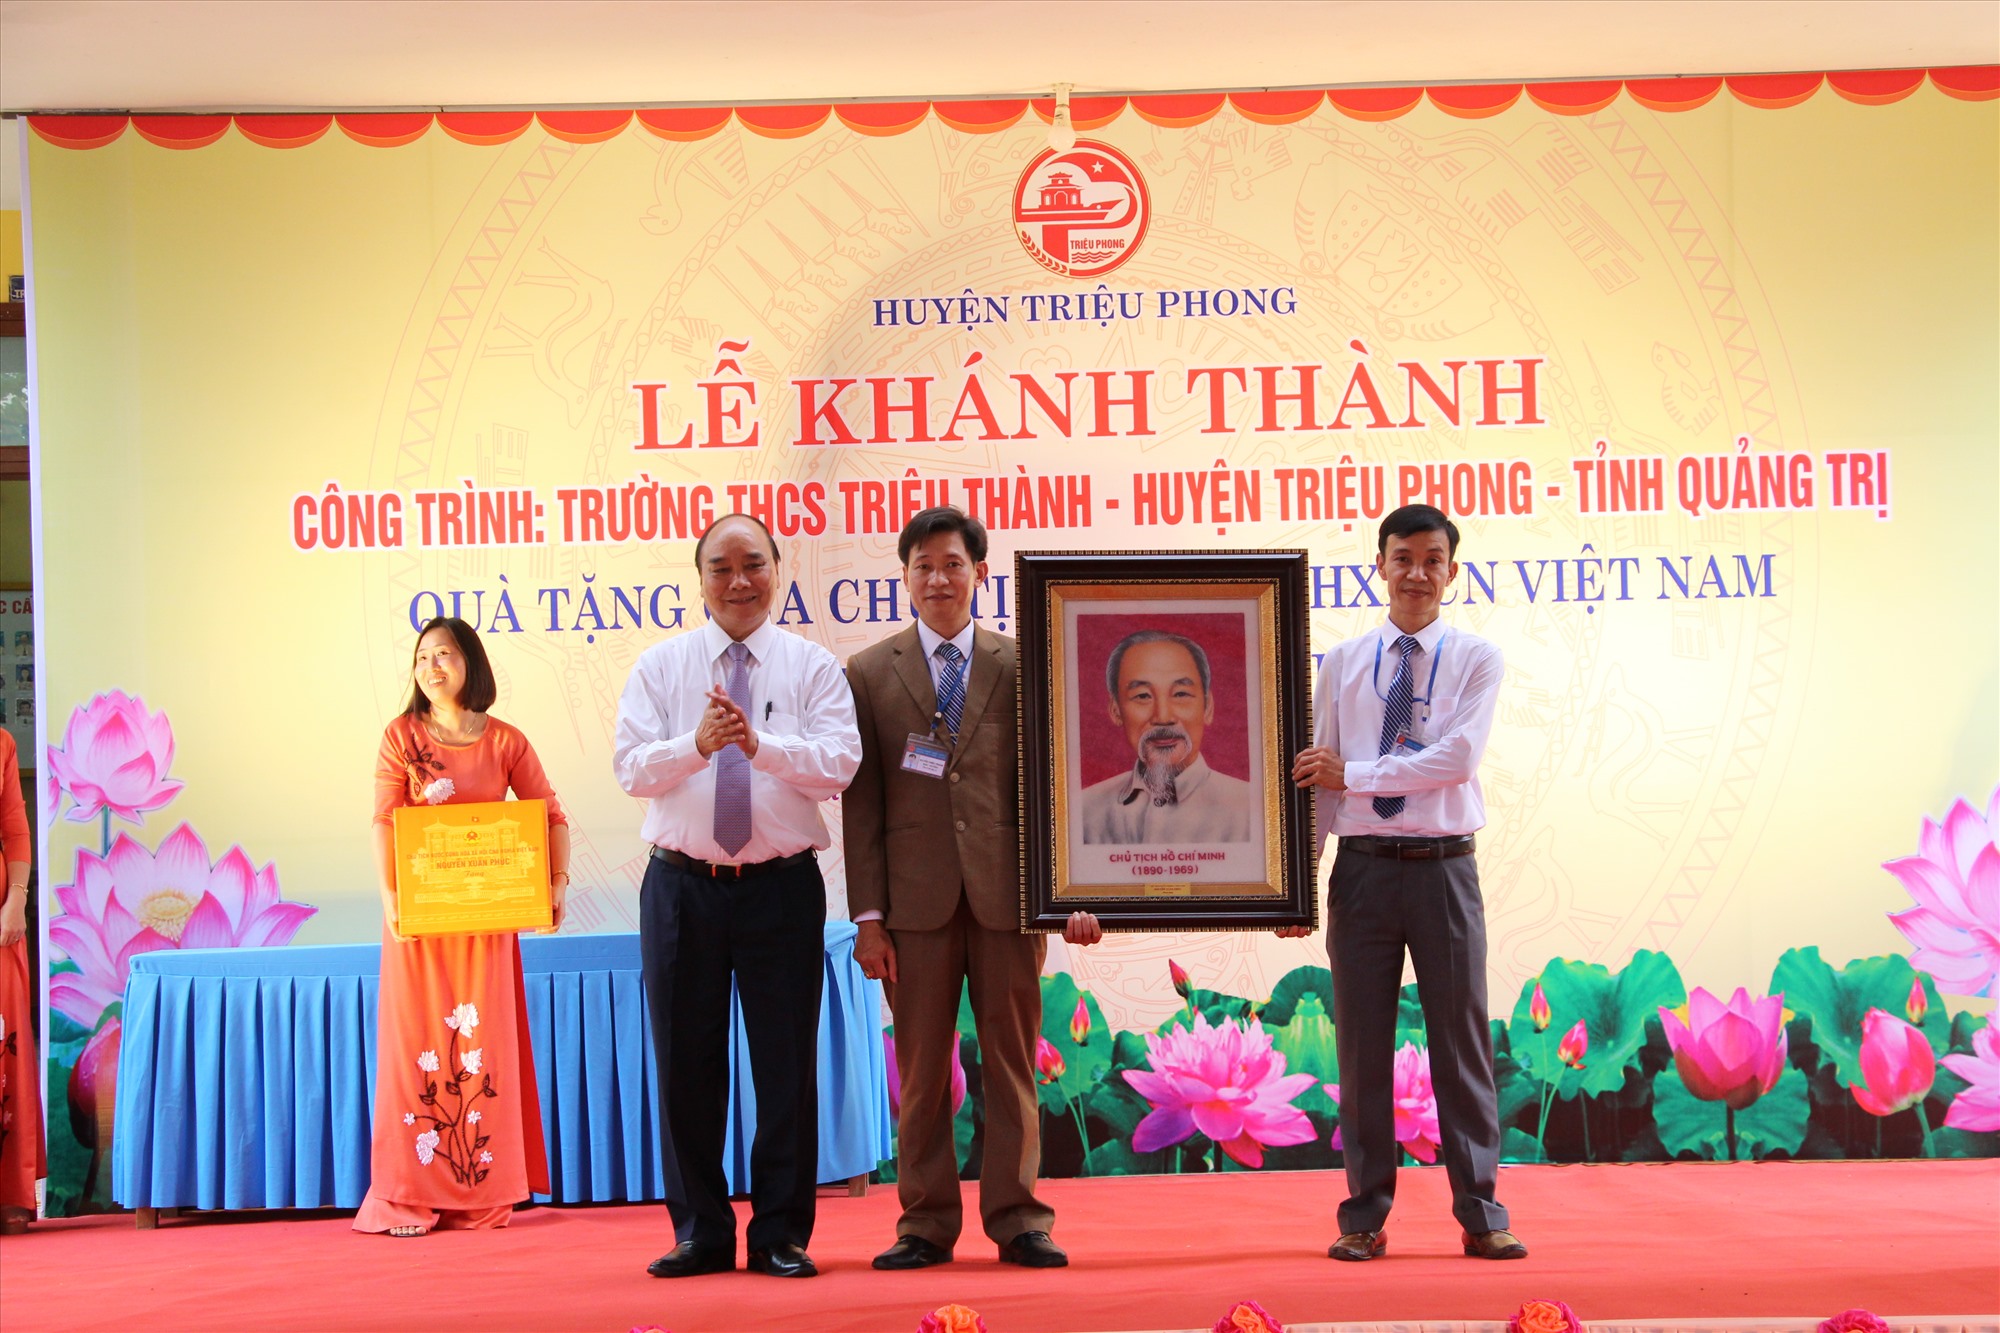 Chủ tịch nước Nguyễn Xuân Phúc trao tặng ảnh Chủ tịch Hồ Chí Minh cho Trường THCS Triệu Thành, huyện Triệu Phong